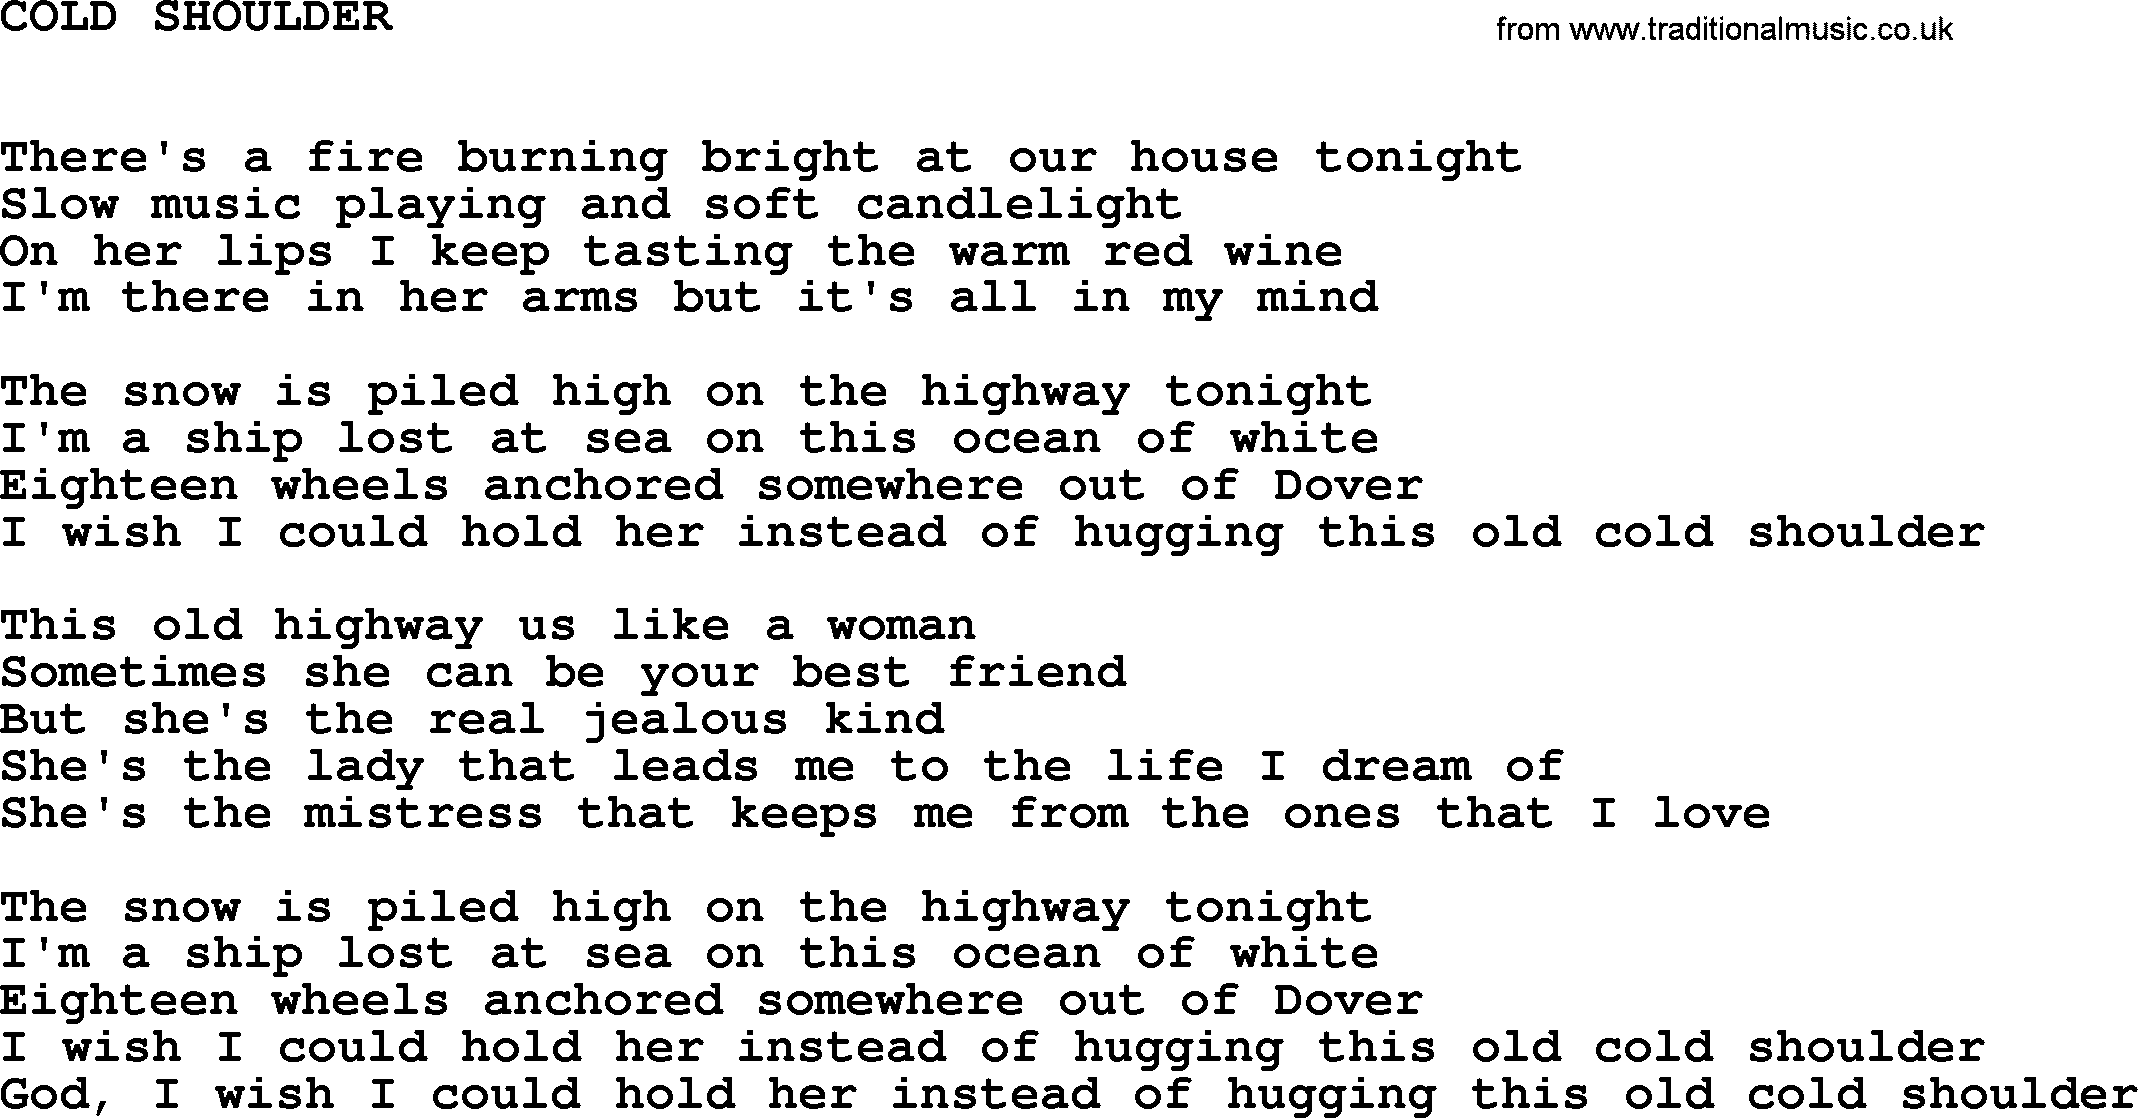 Johnny Cash song Cold Shoulder.txt lyrics